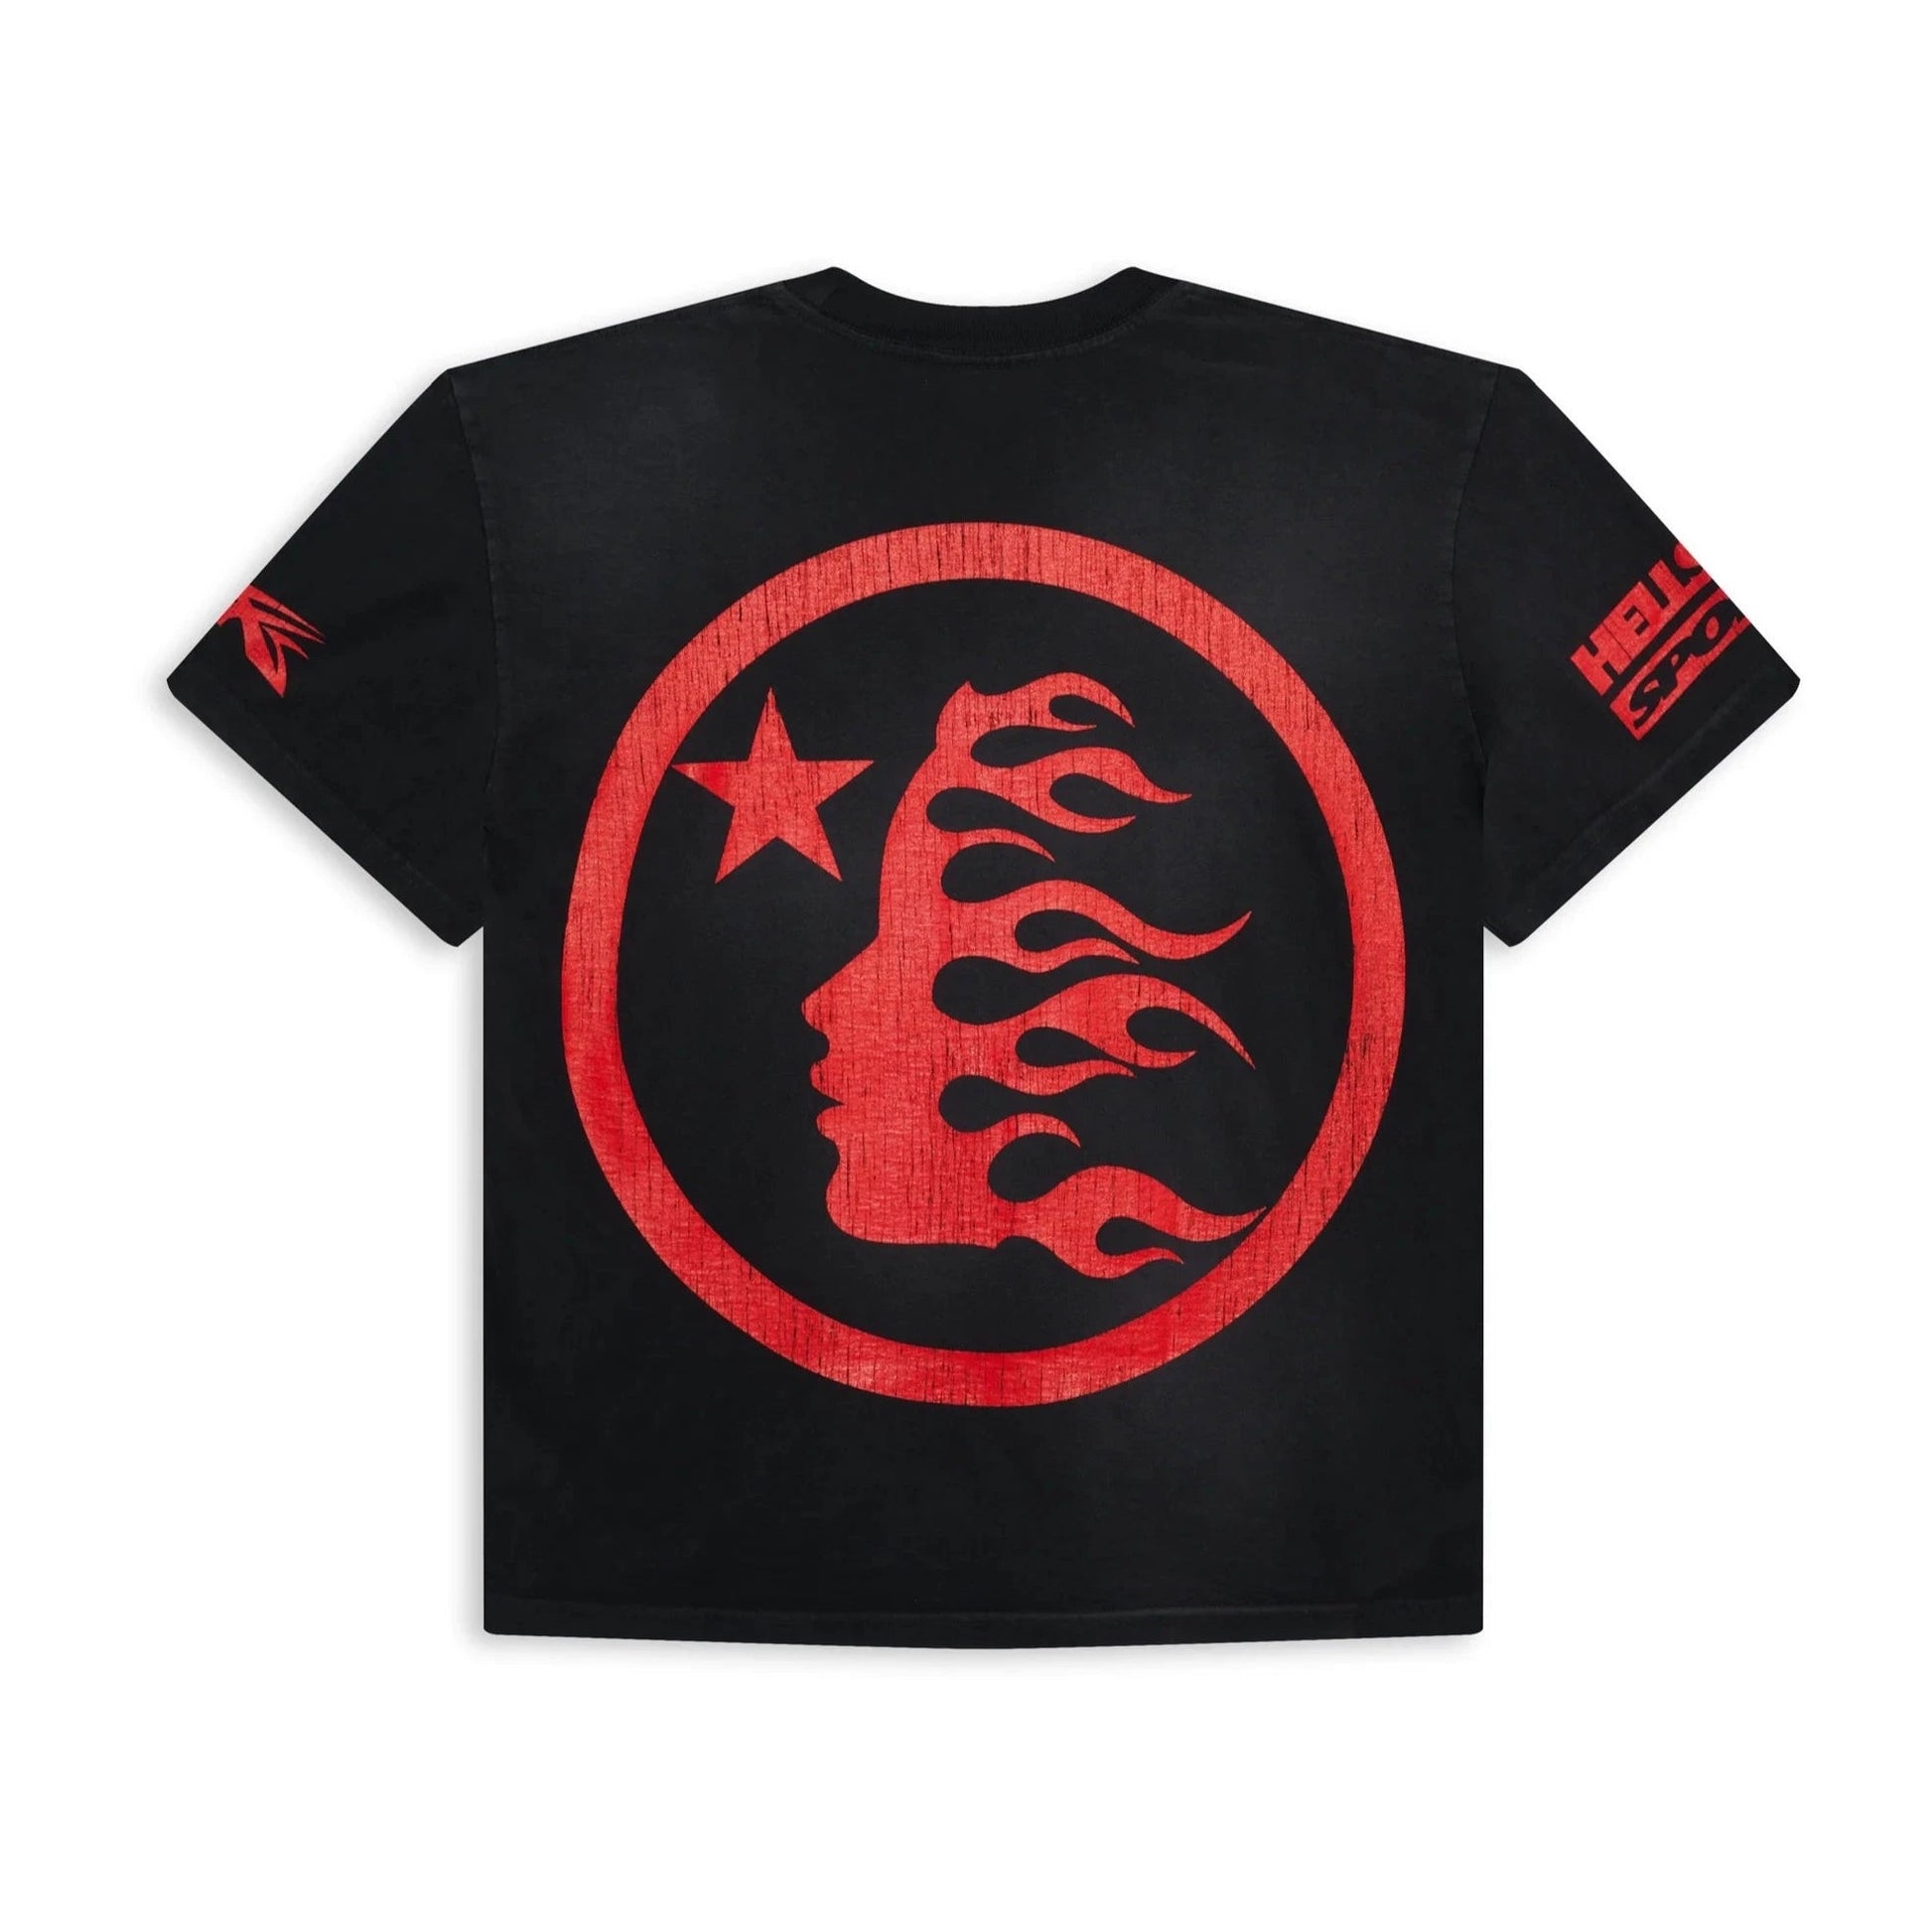 Hellstar Sports Beat Us! T-Shirt (Red/Black) - Sneakersbe Sneakers Sale Online